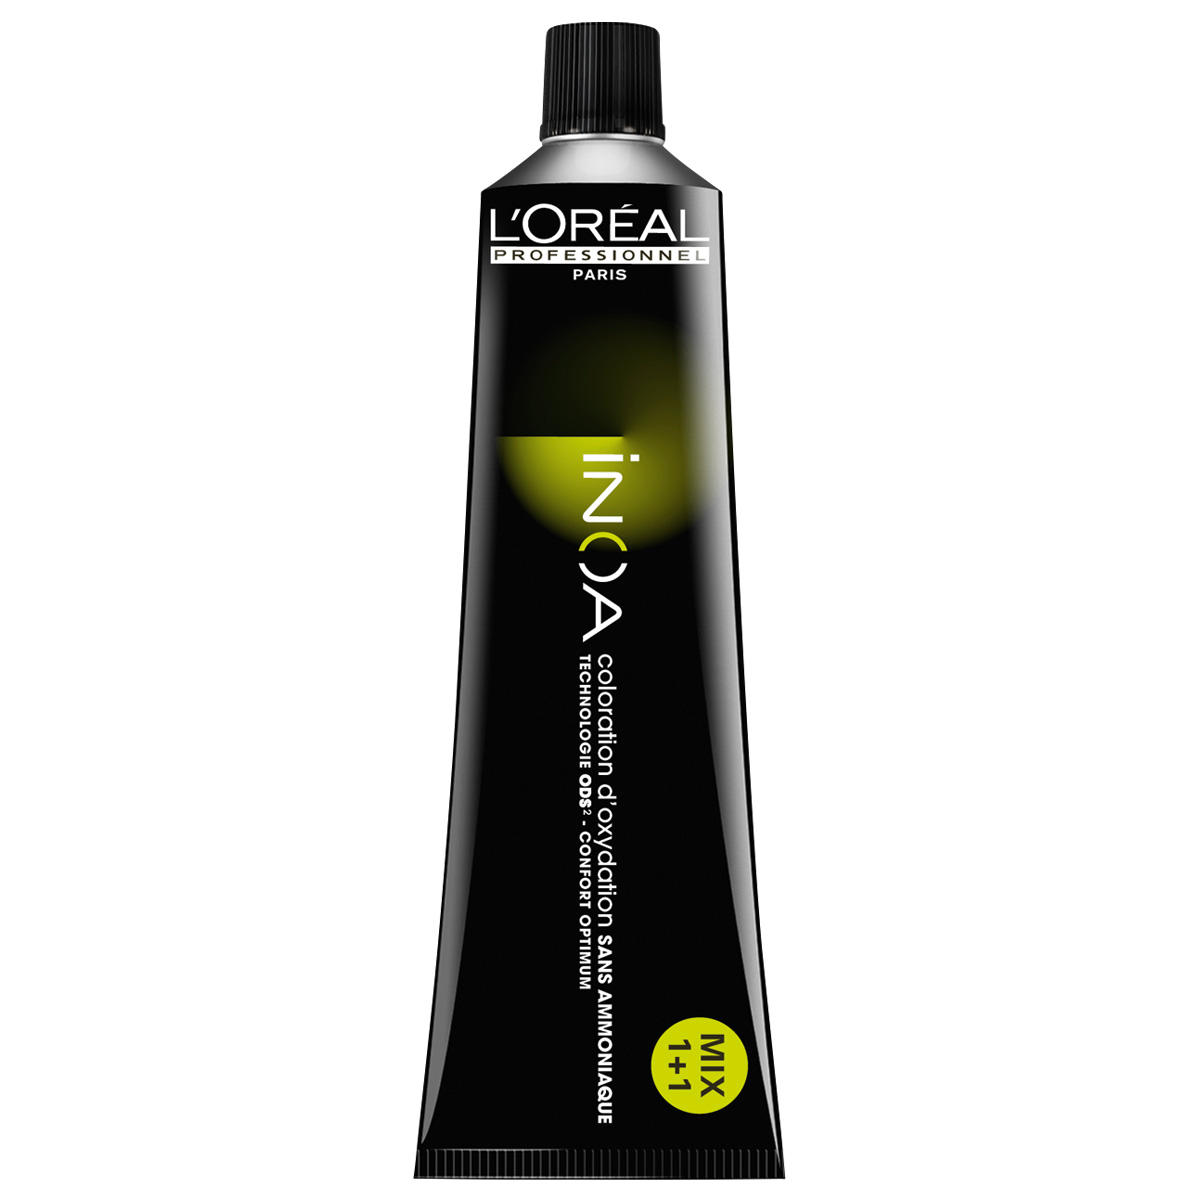 L'Oréal Professionnel Paris Coloration 6.11 Rubio oscuro ceniza profundo, tubo 60 ml